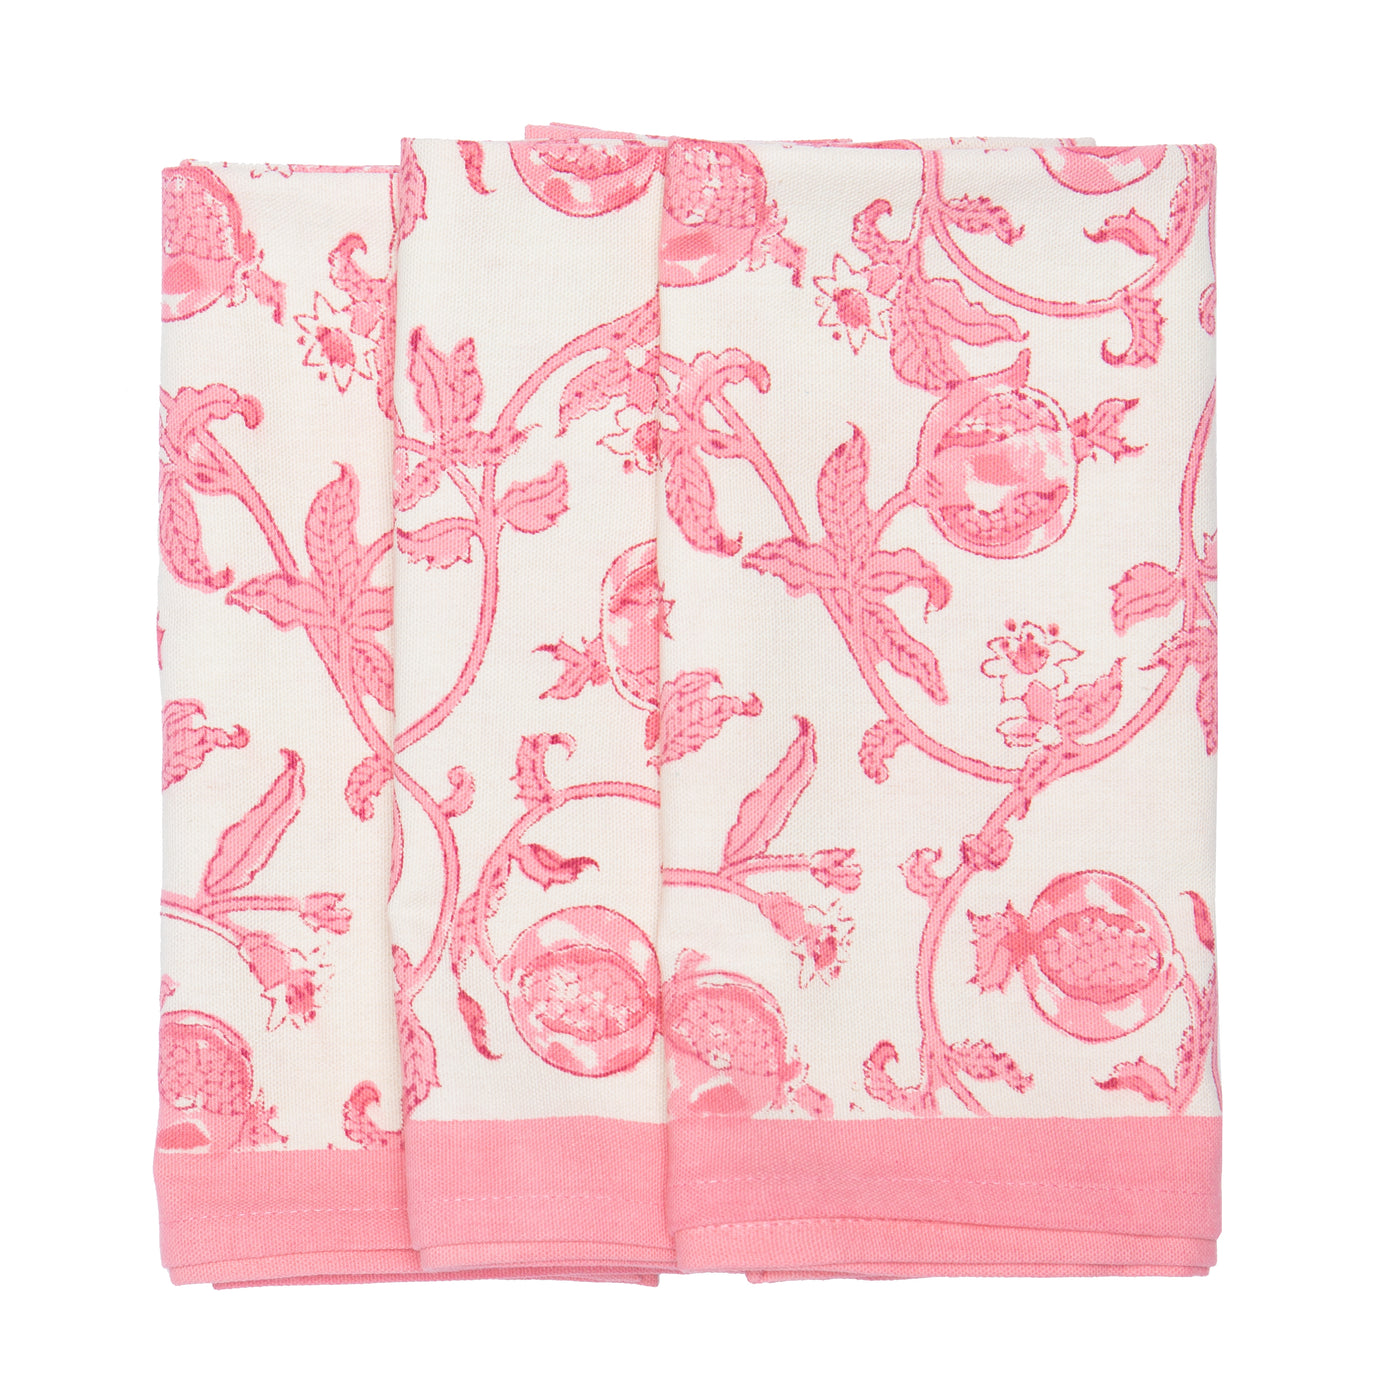 Granada Jaipur Pink Tea Towels, Set of 3 – CouleurNature